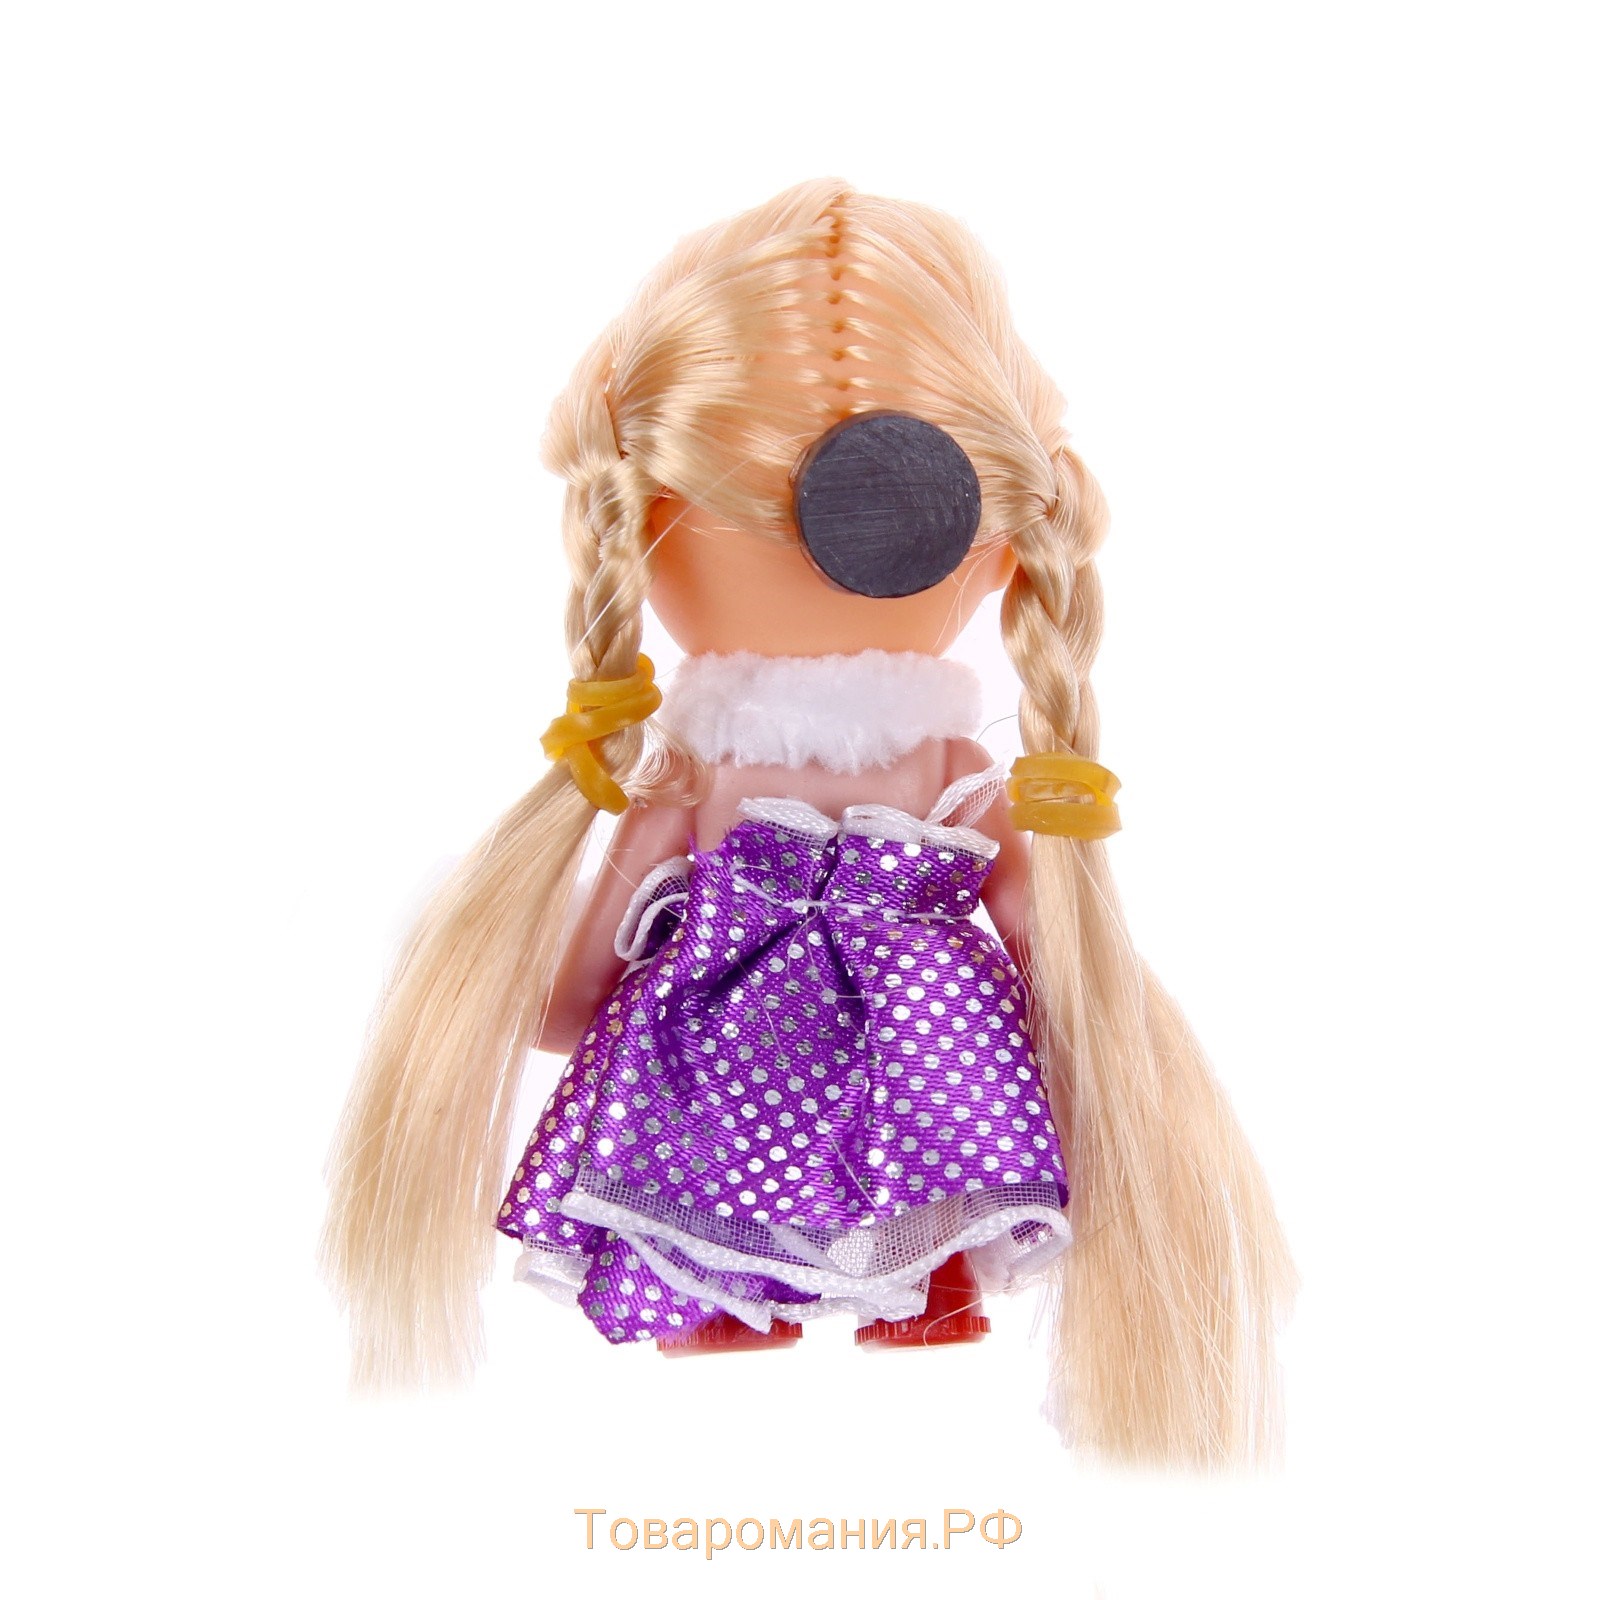 Мягкая игрушка-магнит "Девочка с косичками", цвета МИКС